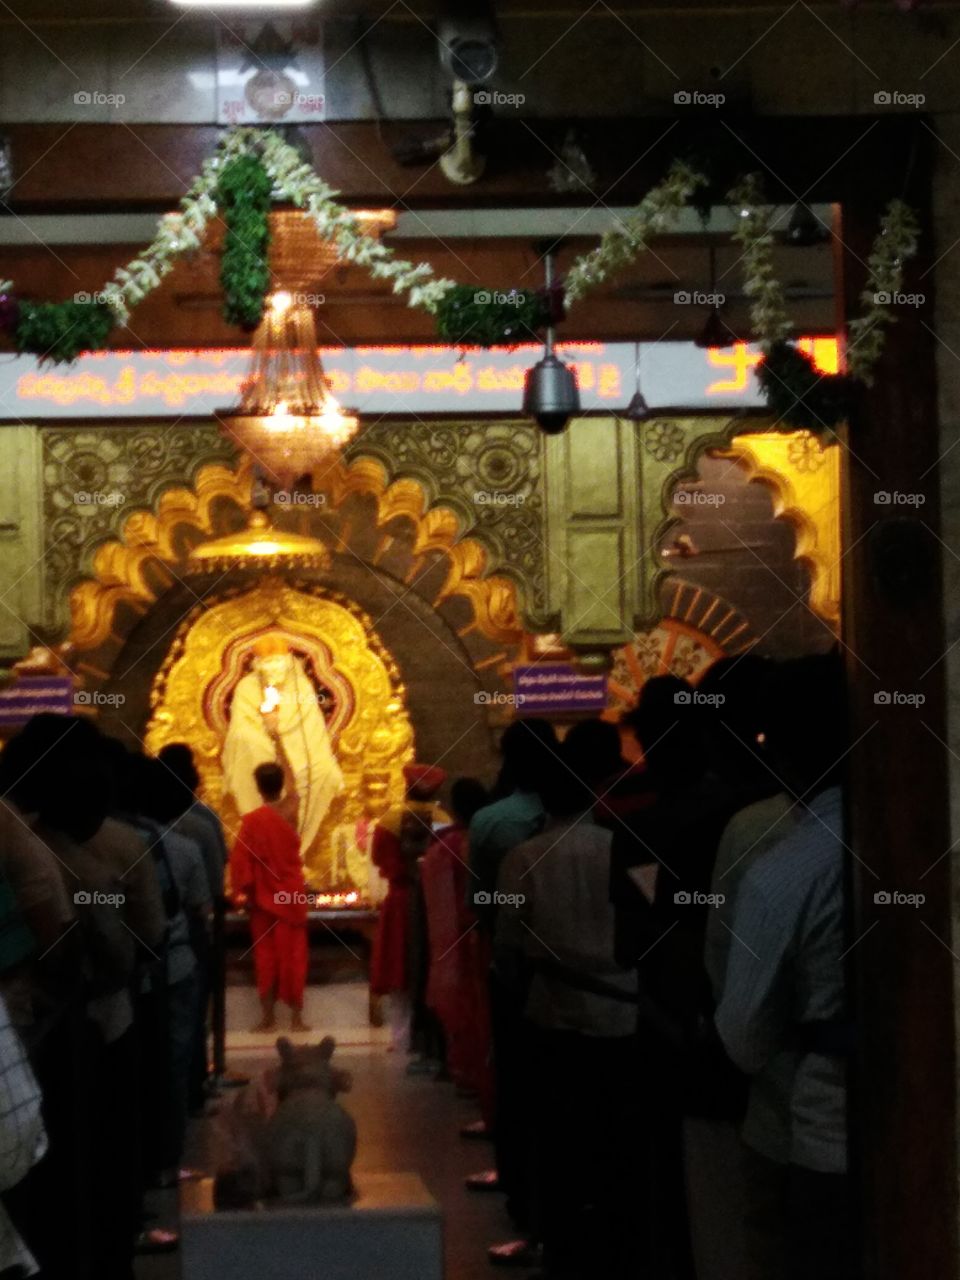 Shirdi Sai Baba temple in India